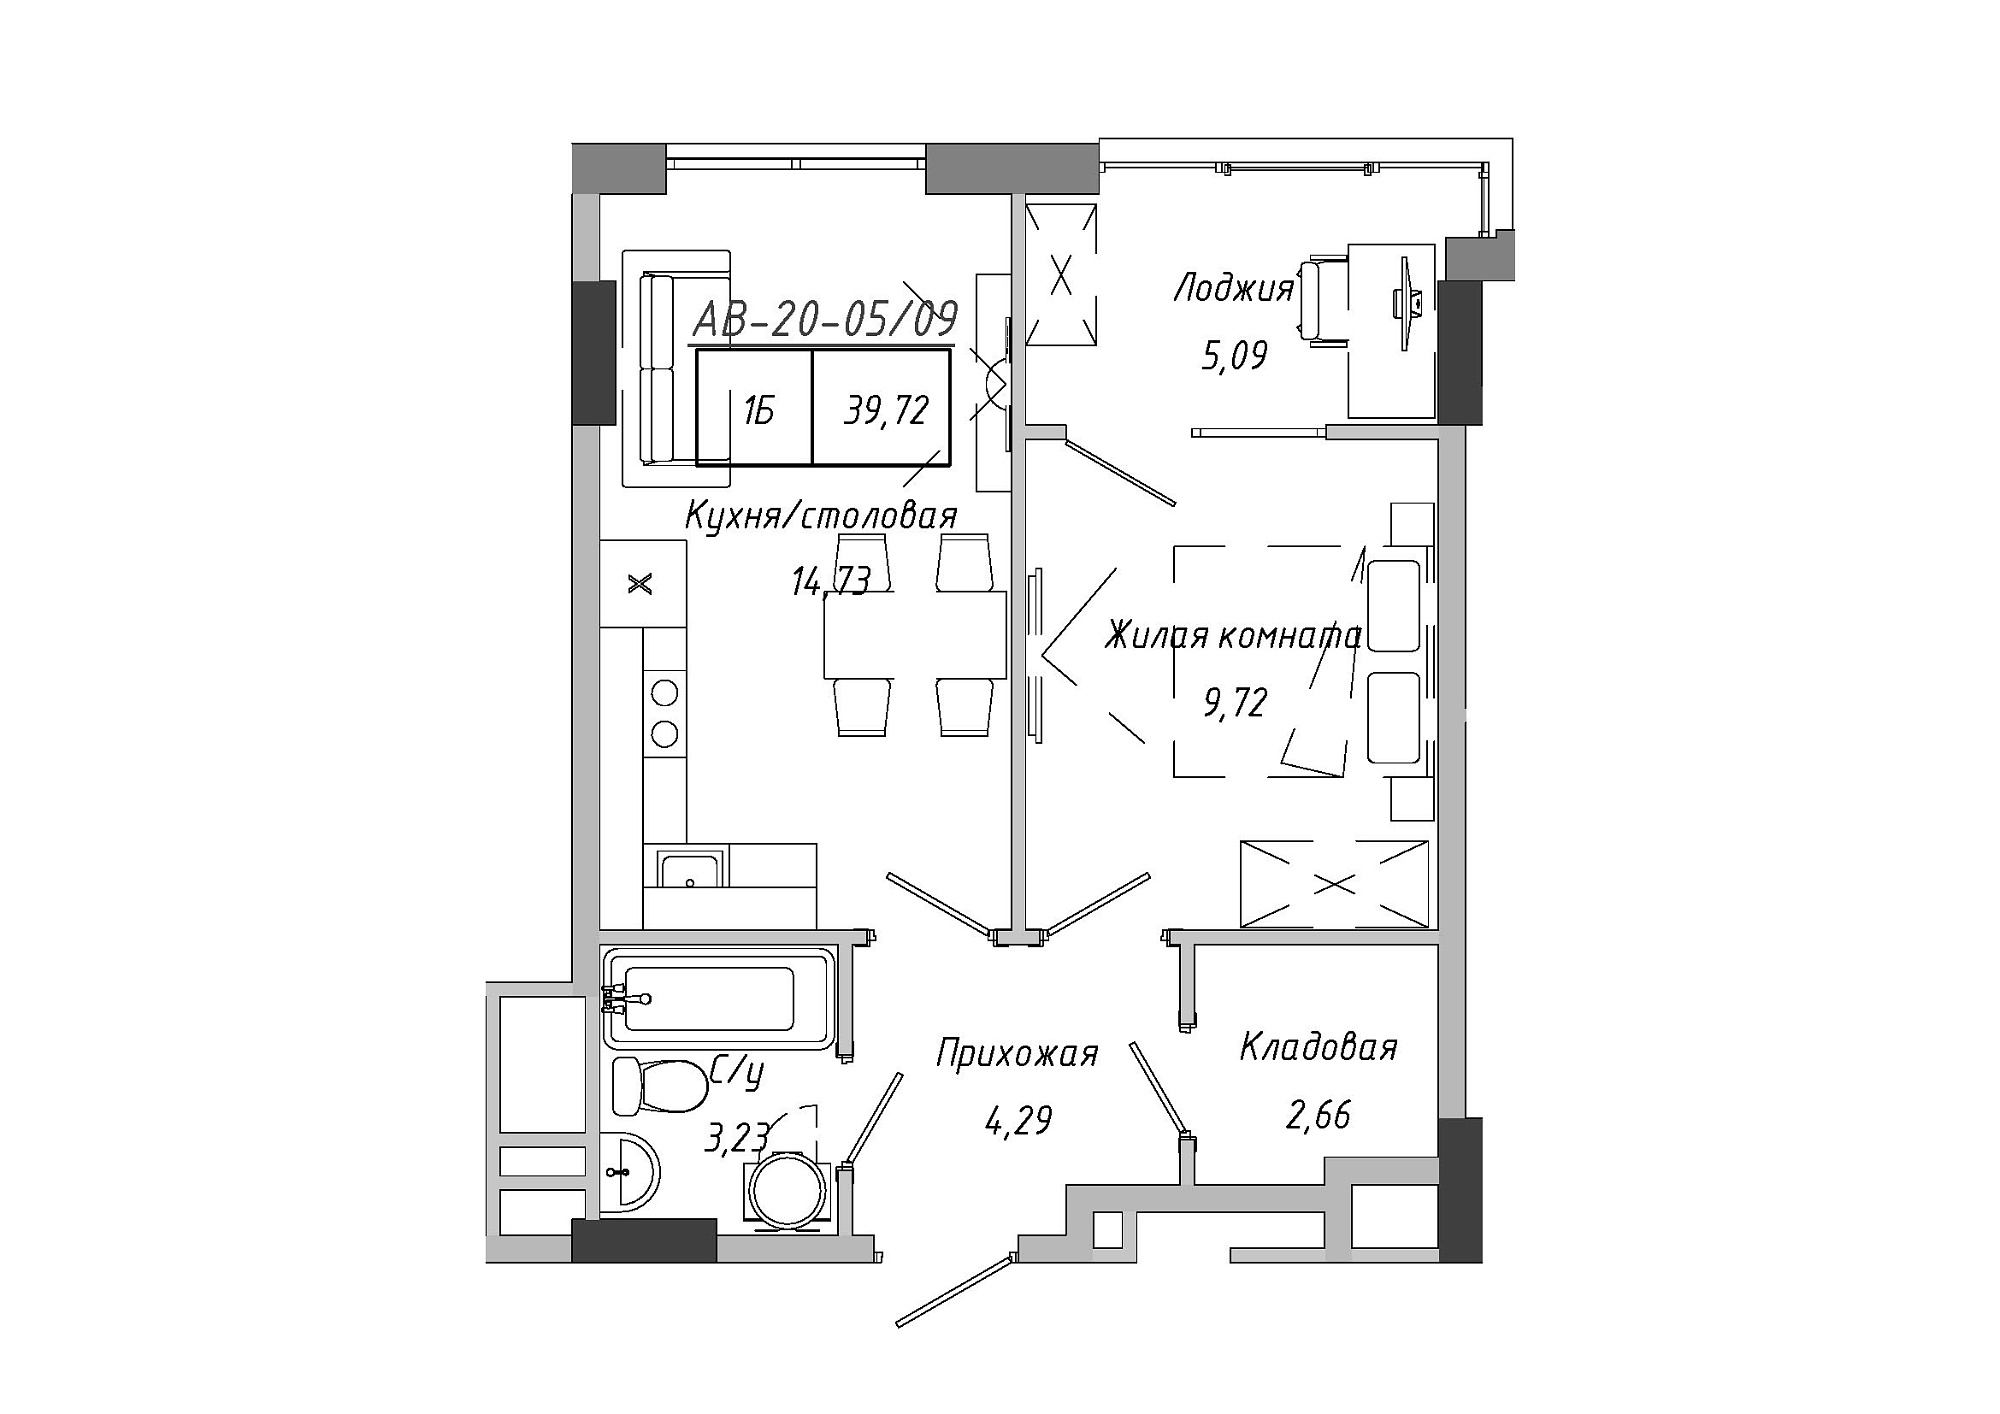 Планування 1-к квартира площею 37.59м2, AB-20-05/00009.